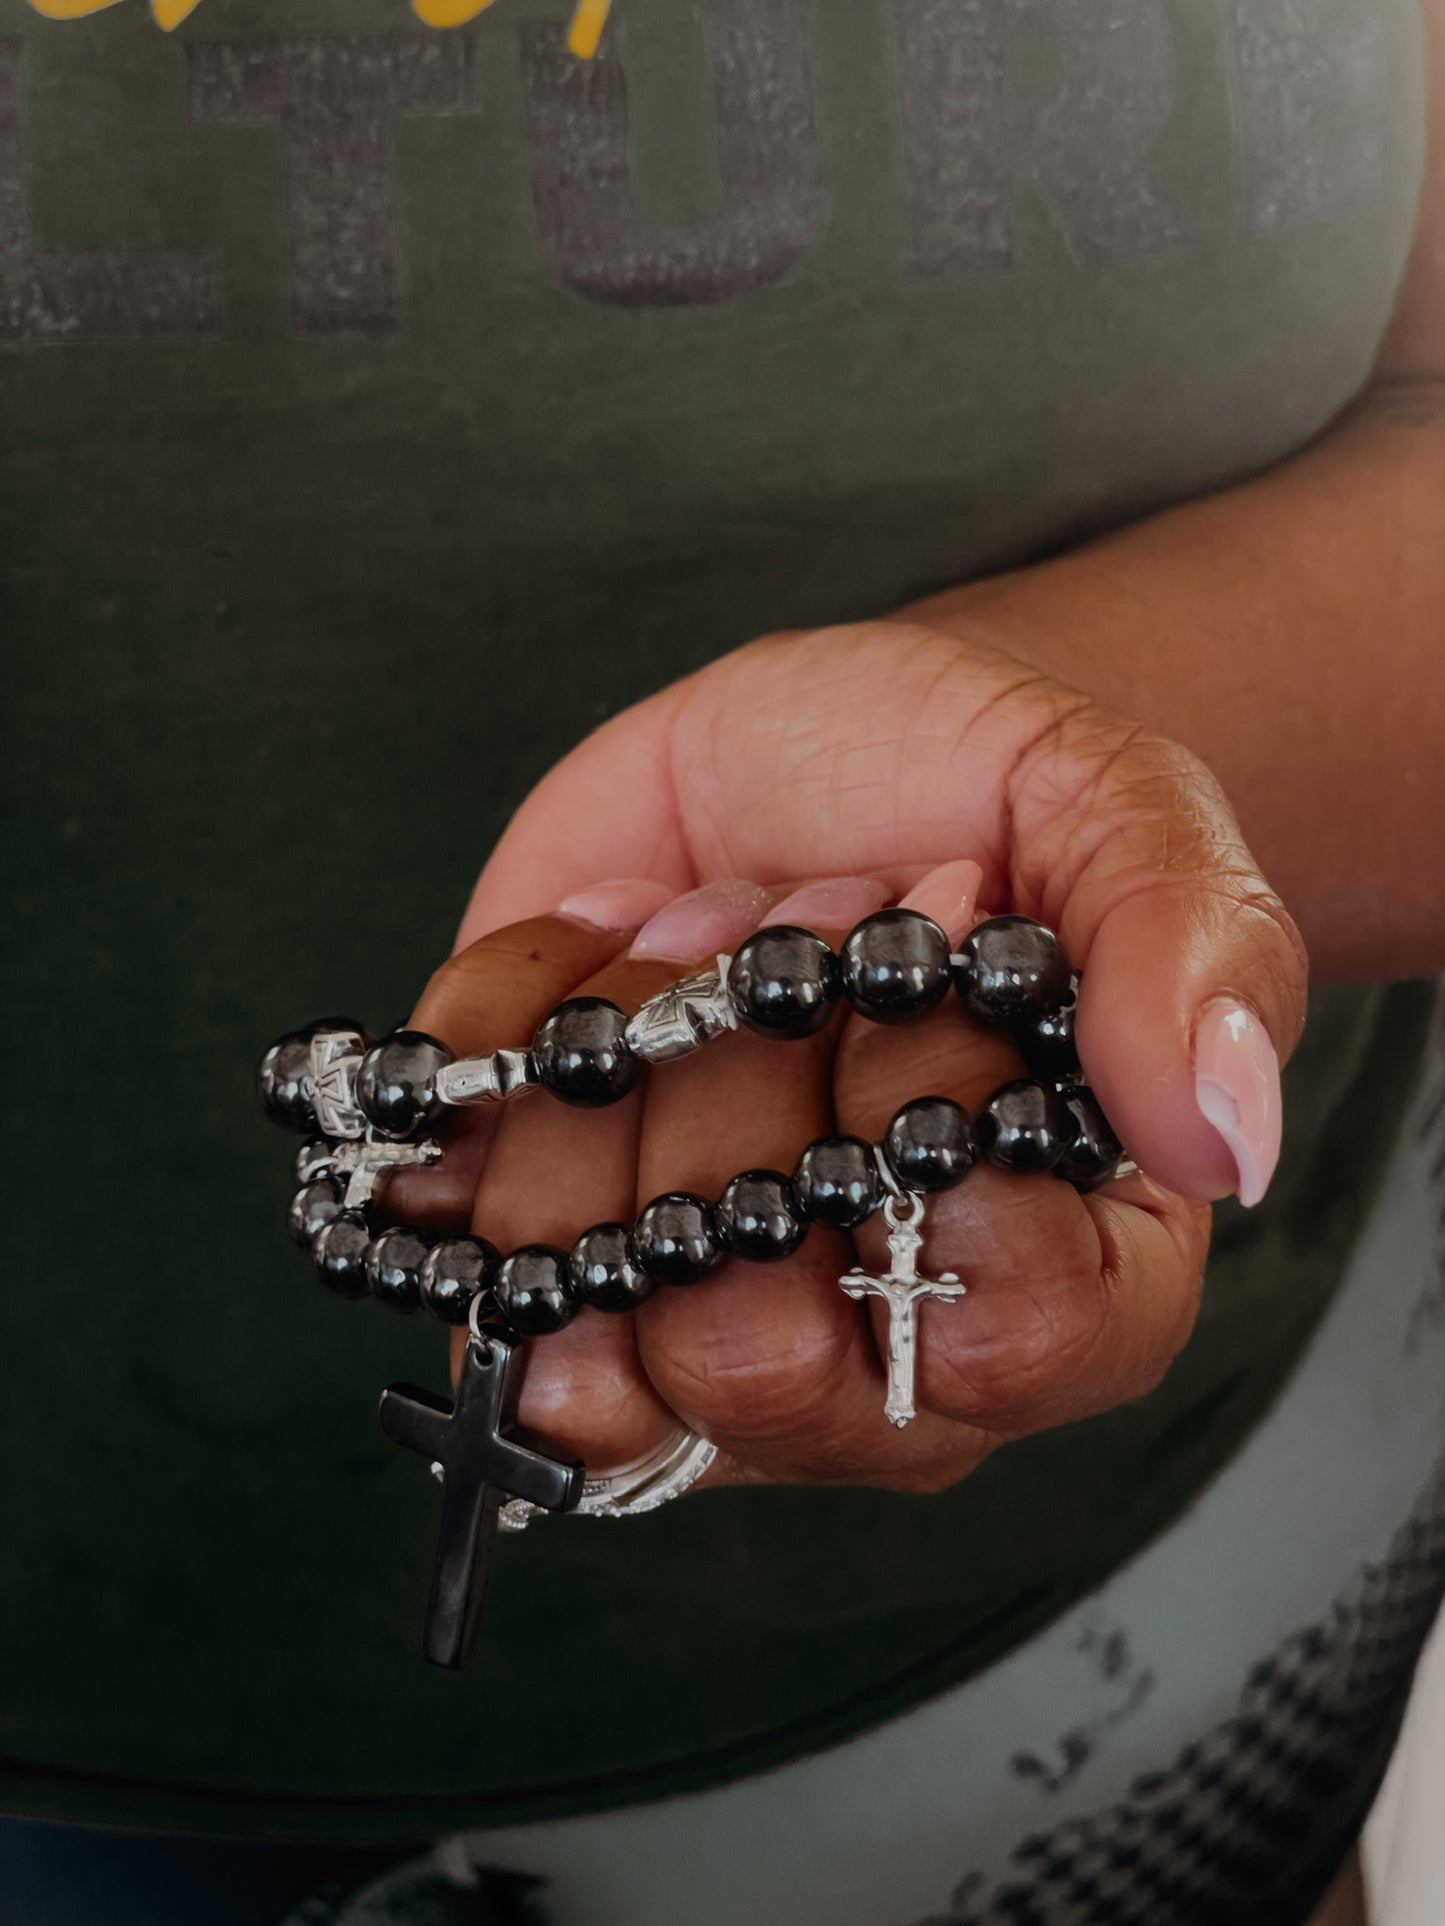 Christian Cross Magnet Bracelet